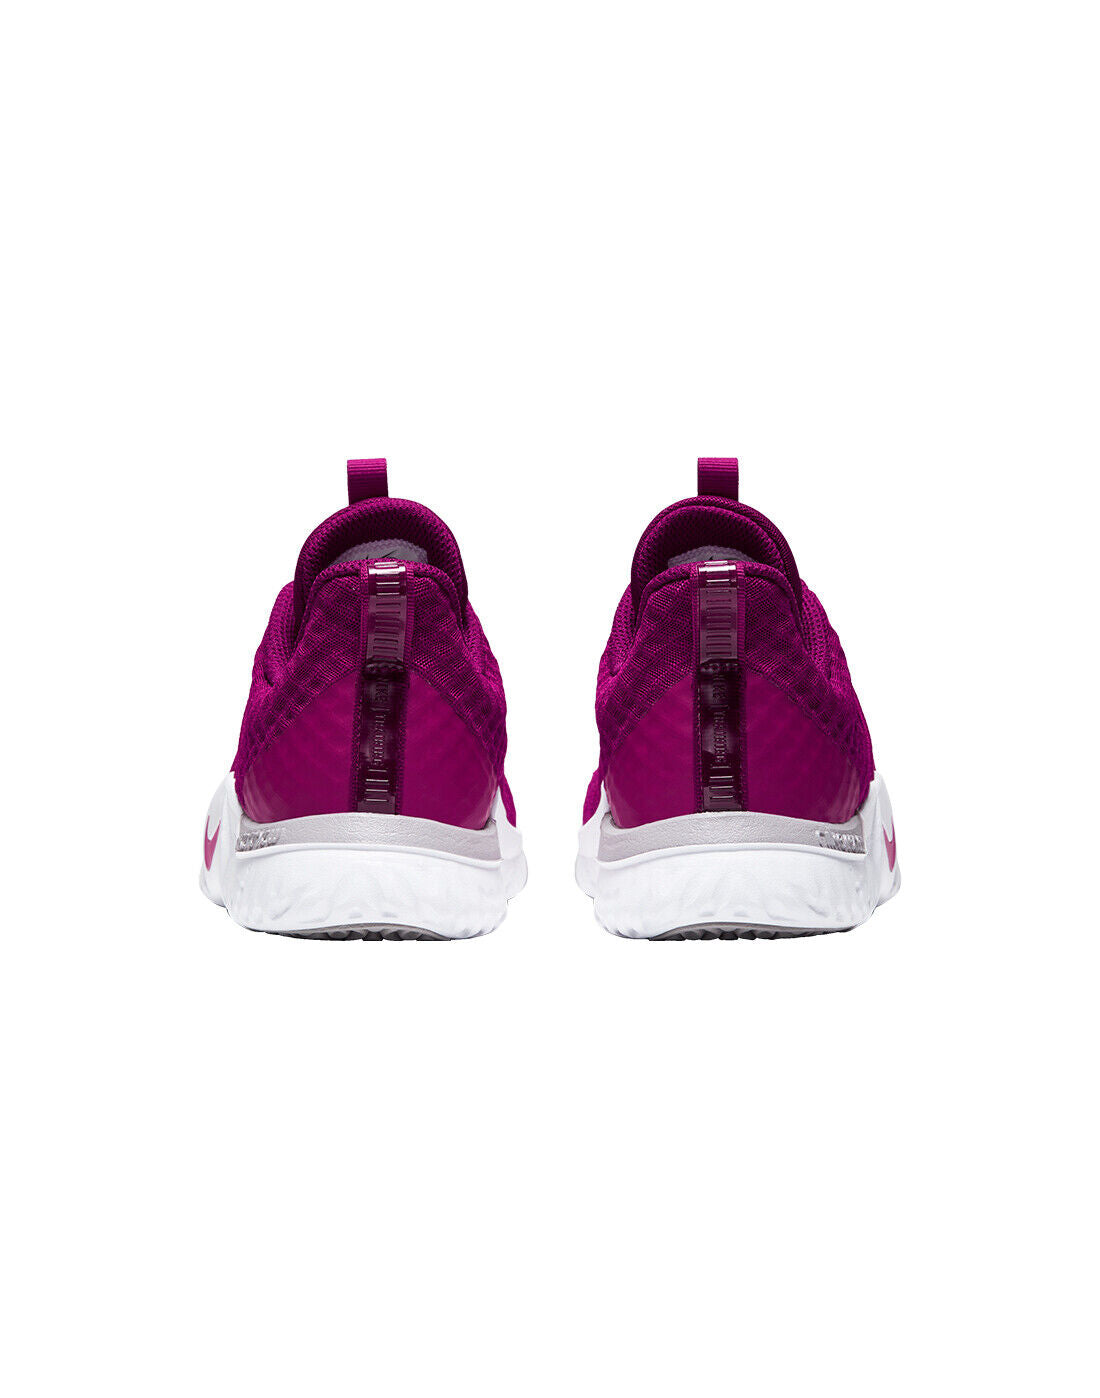 Women's Nike Renew In-Season TR 9 Training Shoes, AR4543 601 Multi Sizes True Berry/Pink Blast